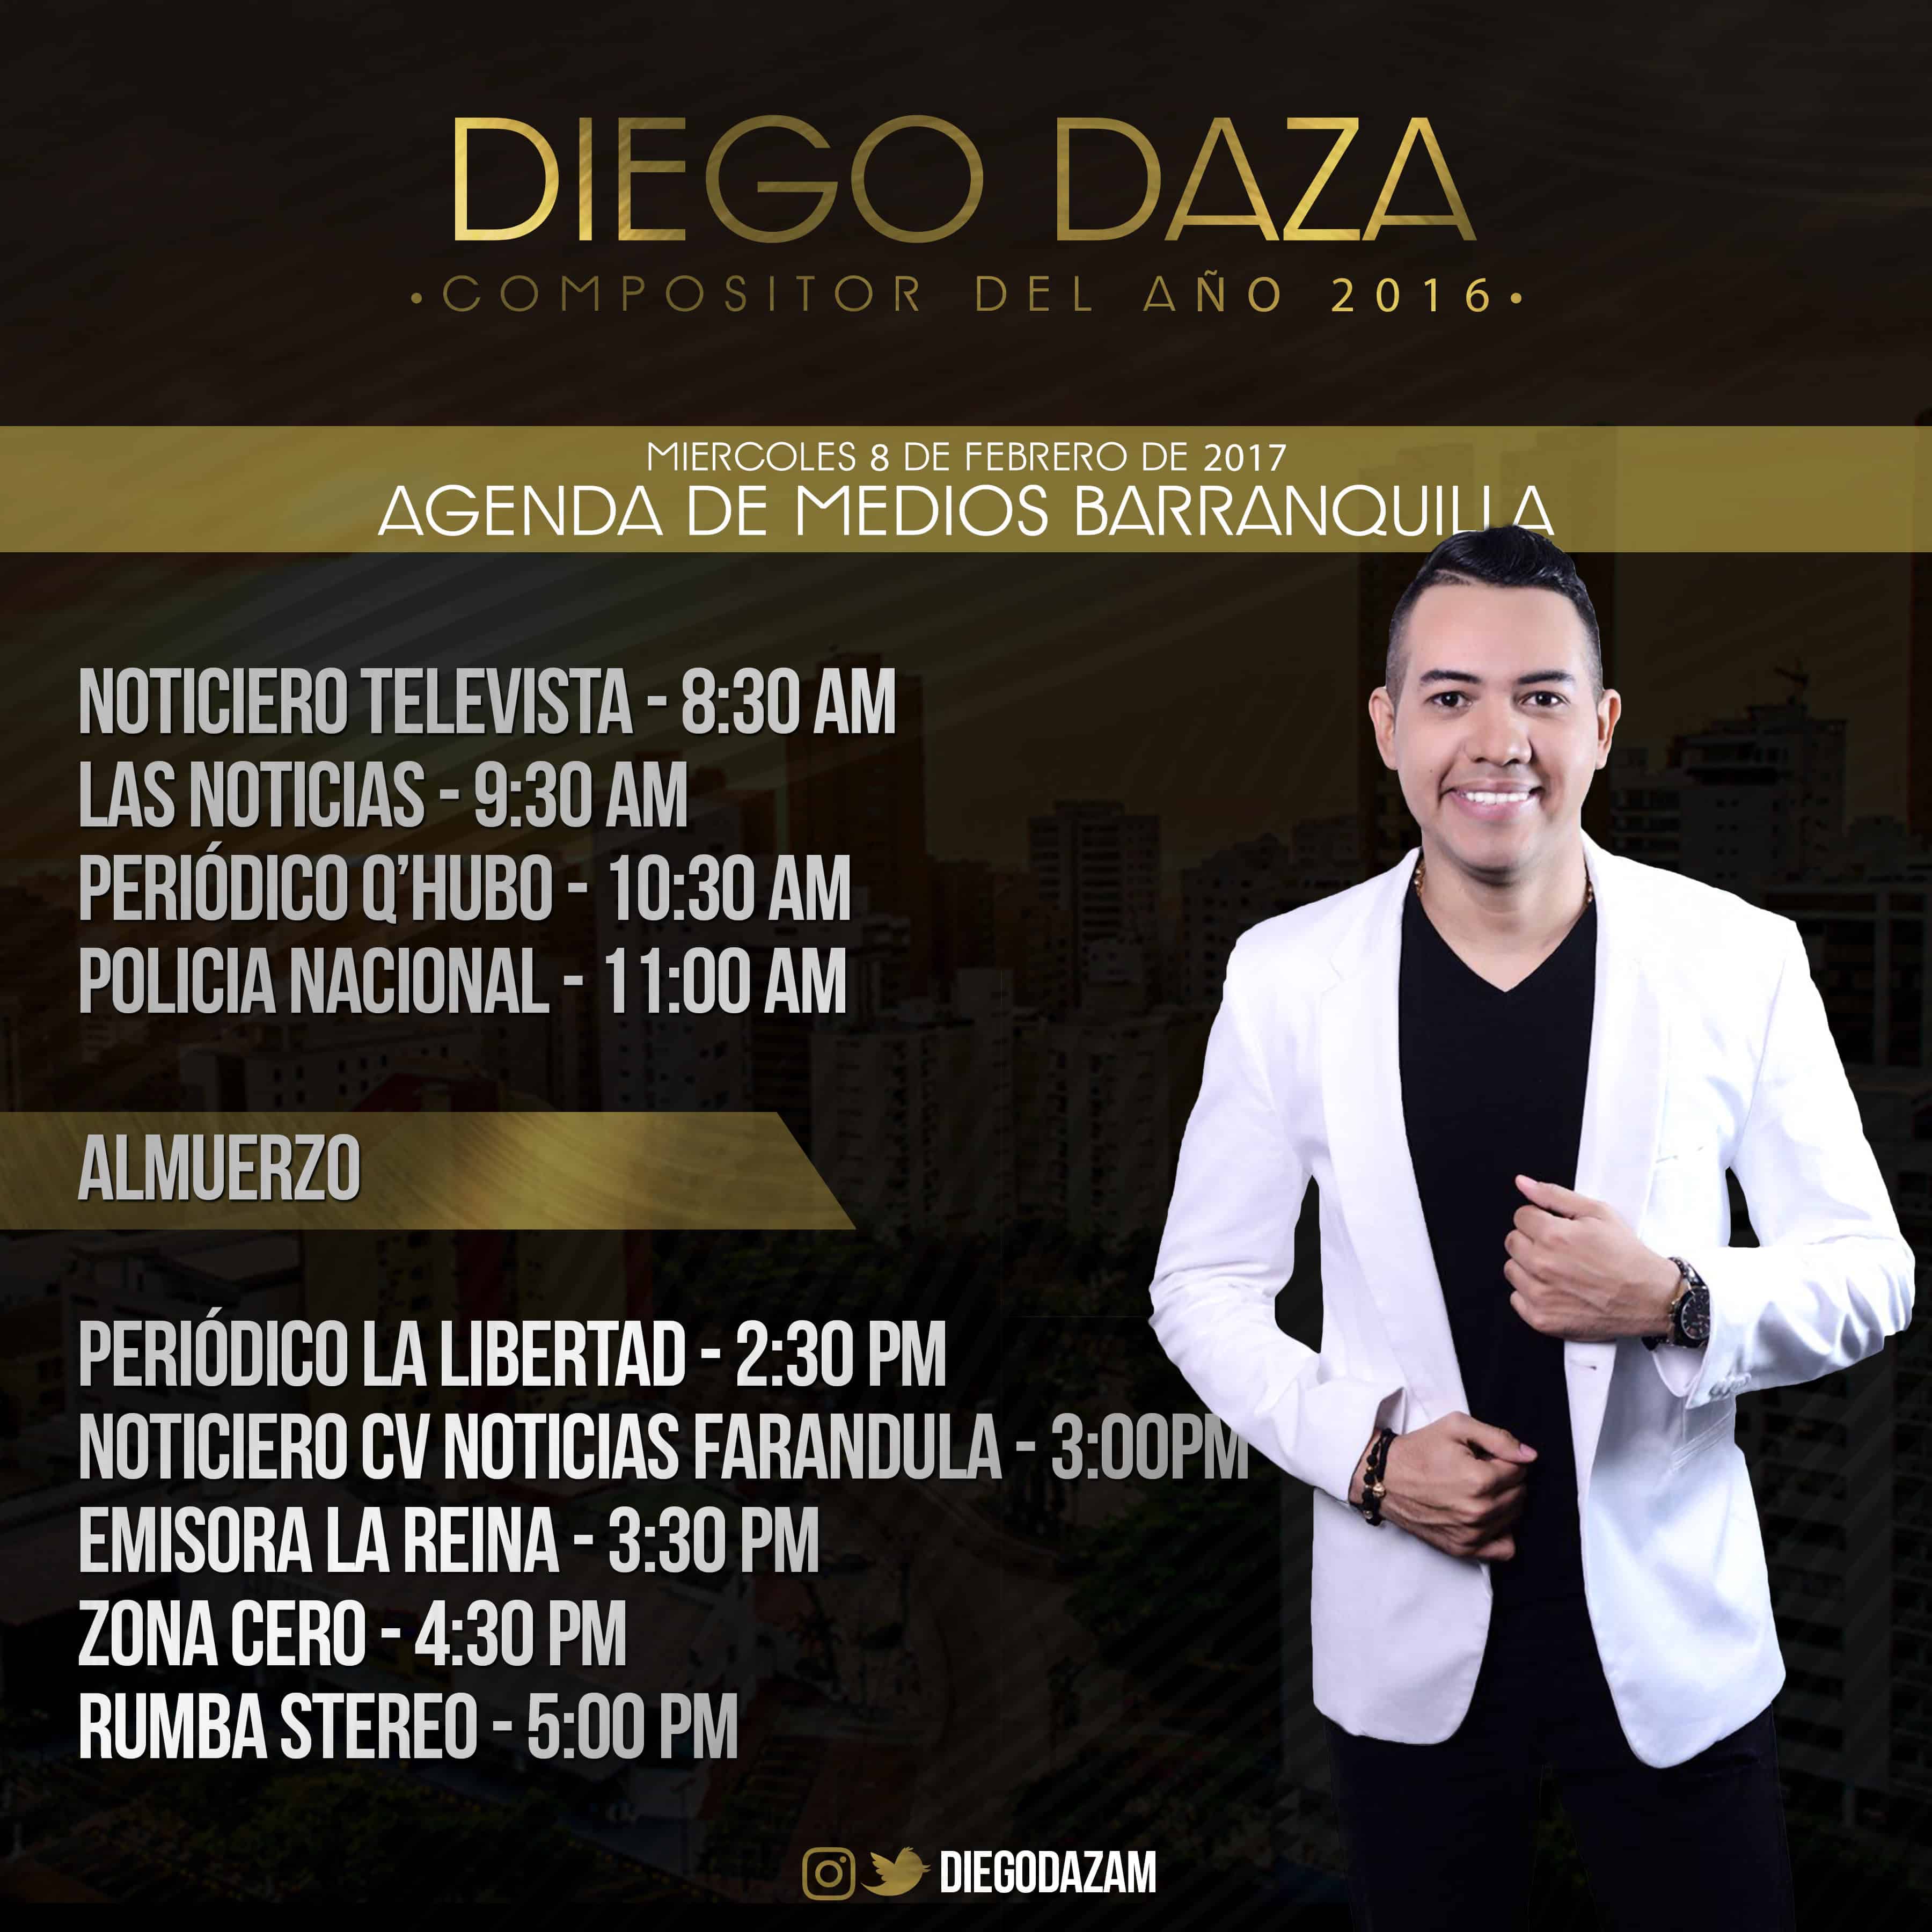 Diego Daza